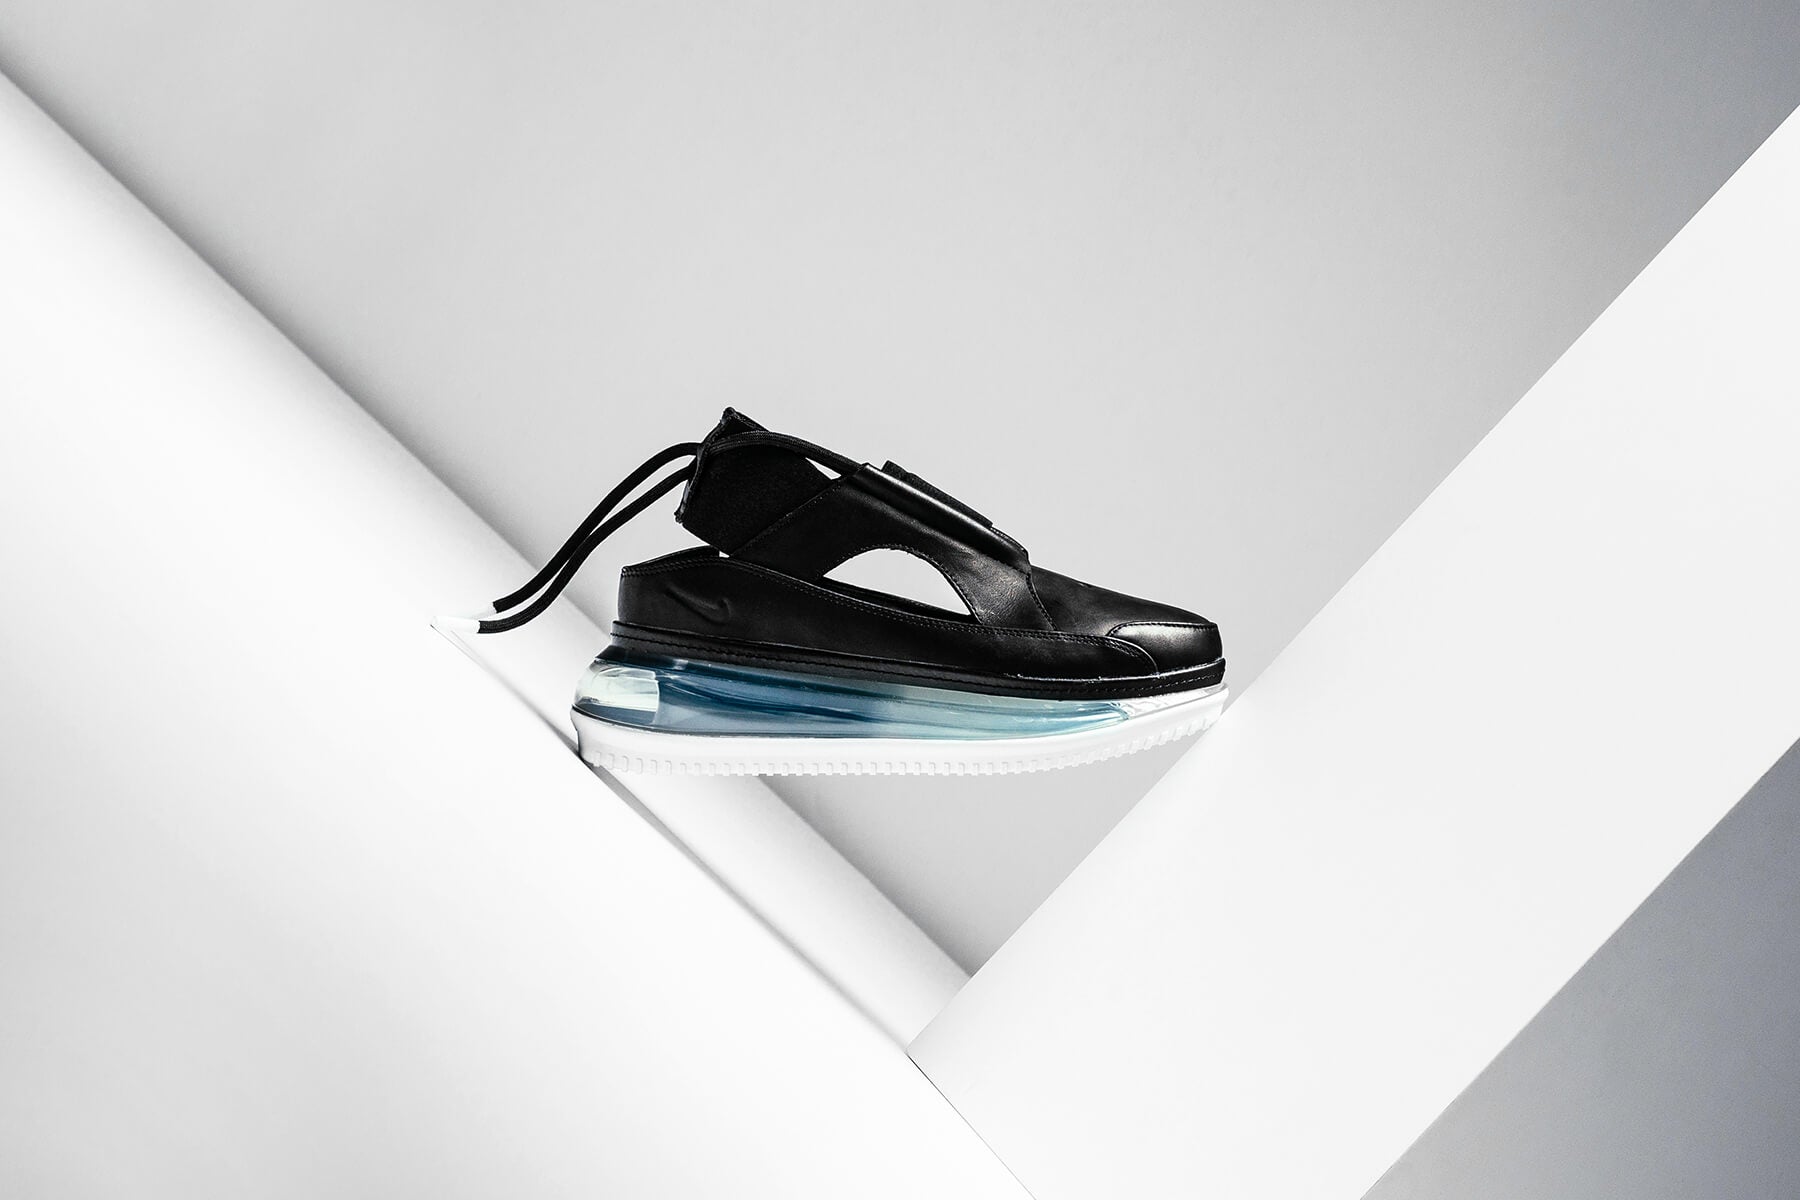 Nike Air Max FF "Black/Metallic Silver" Coming Soon – Feature